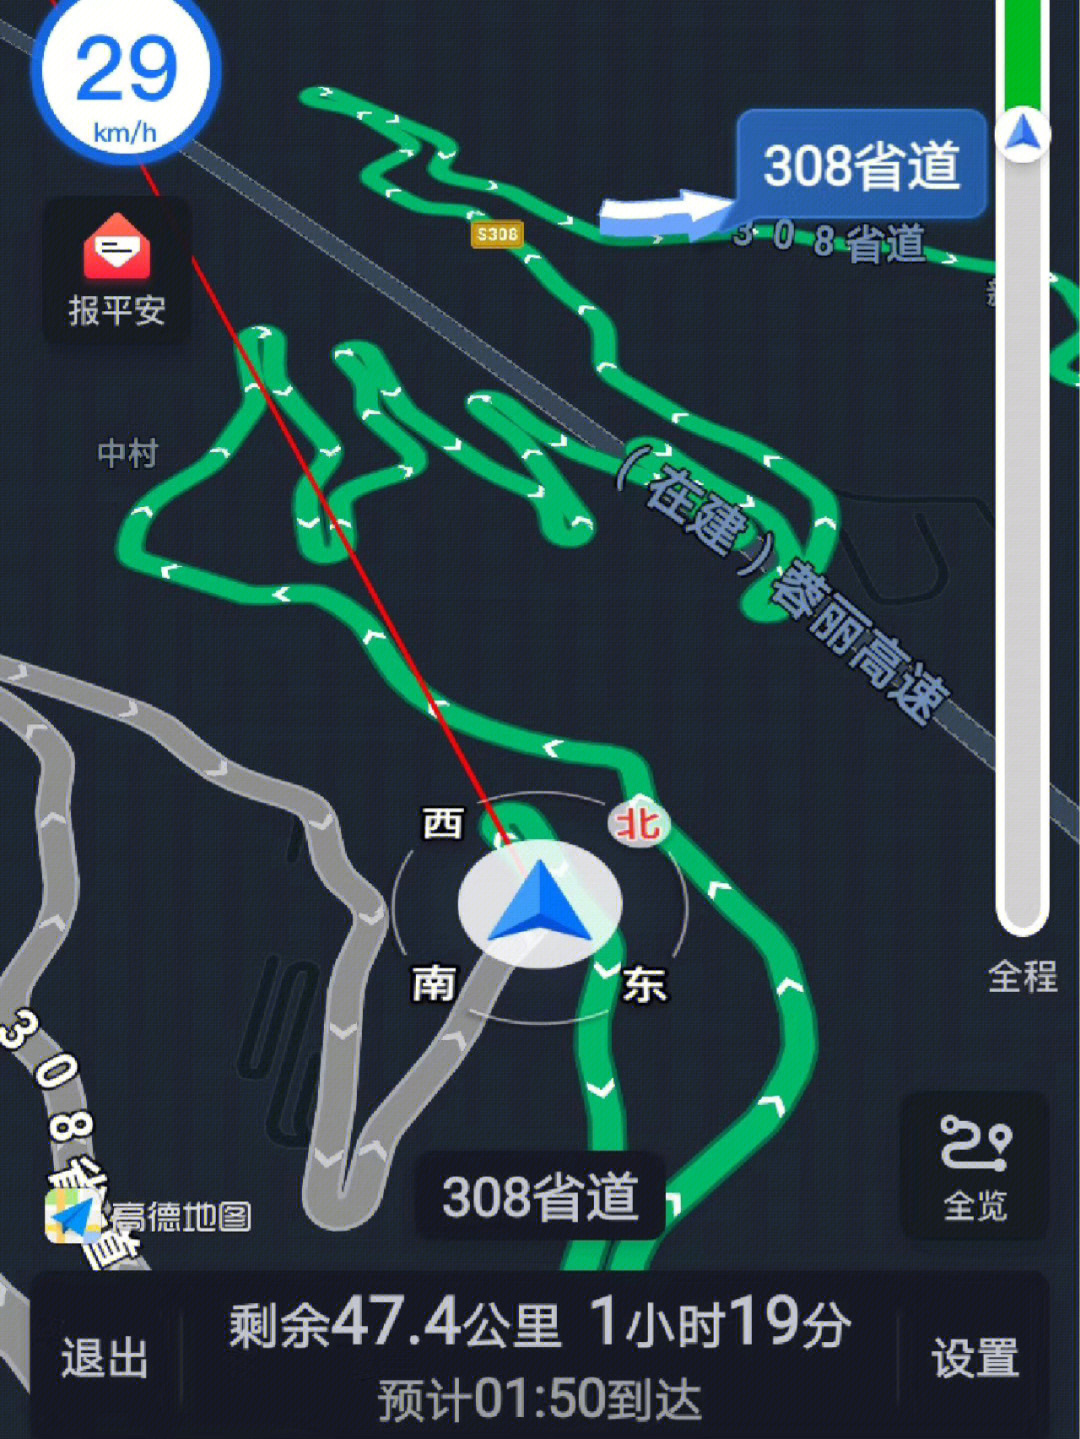 云南s215省道路线图图片